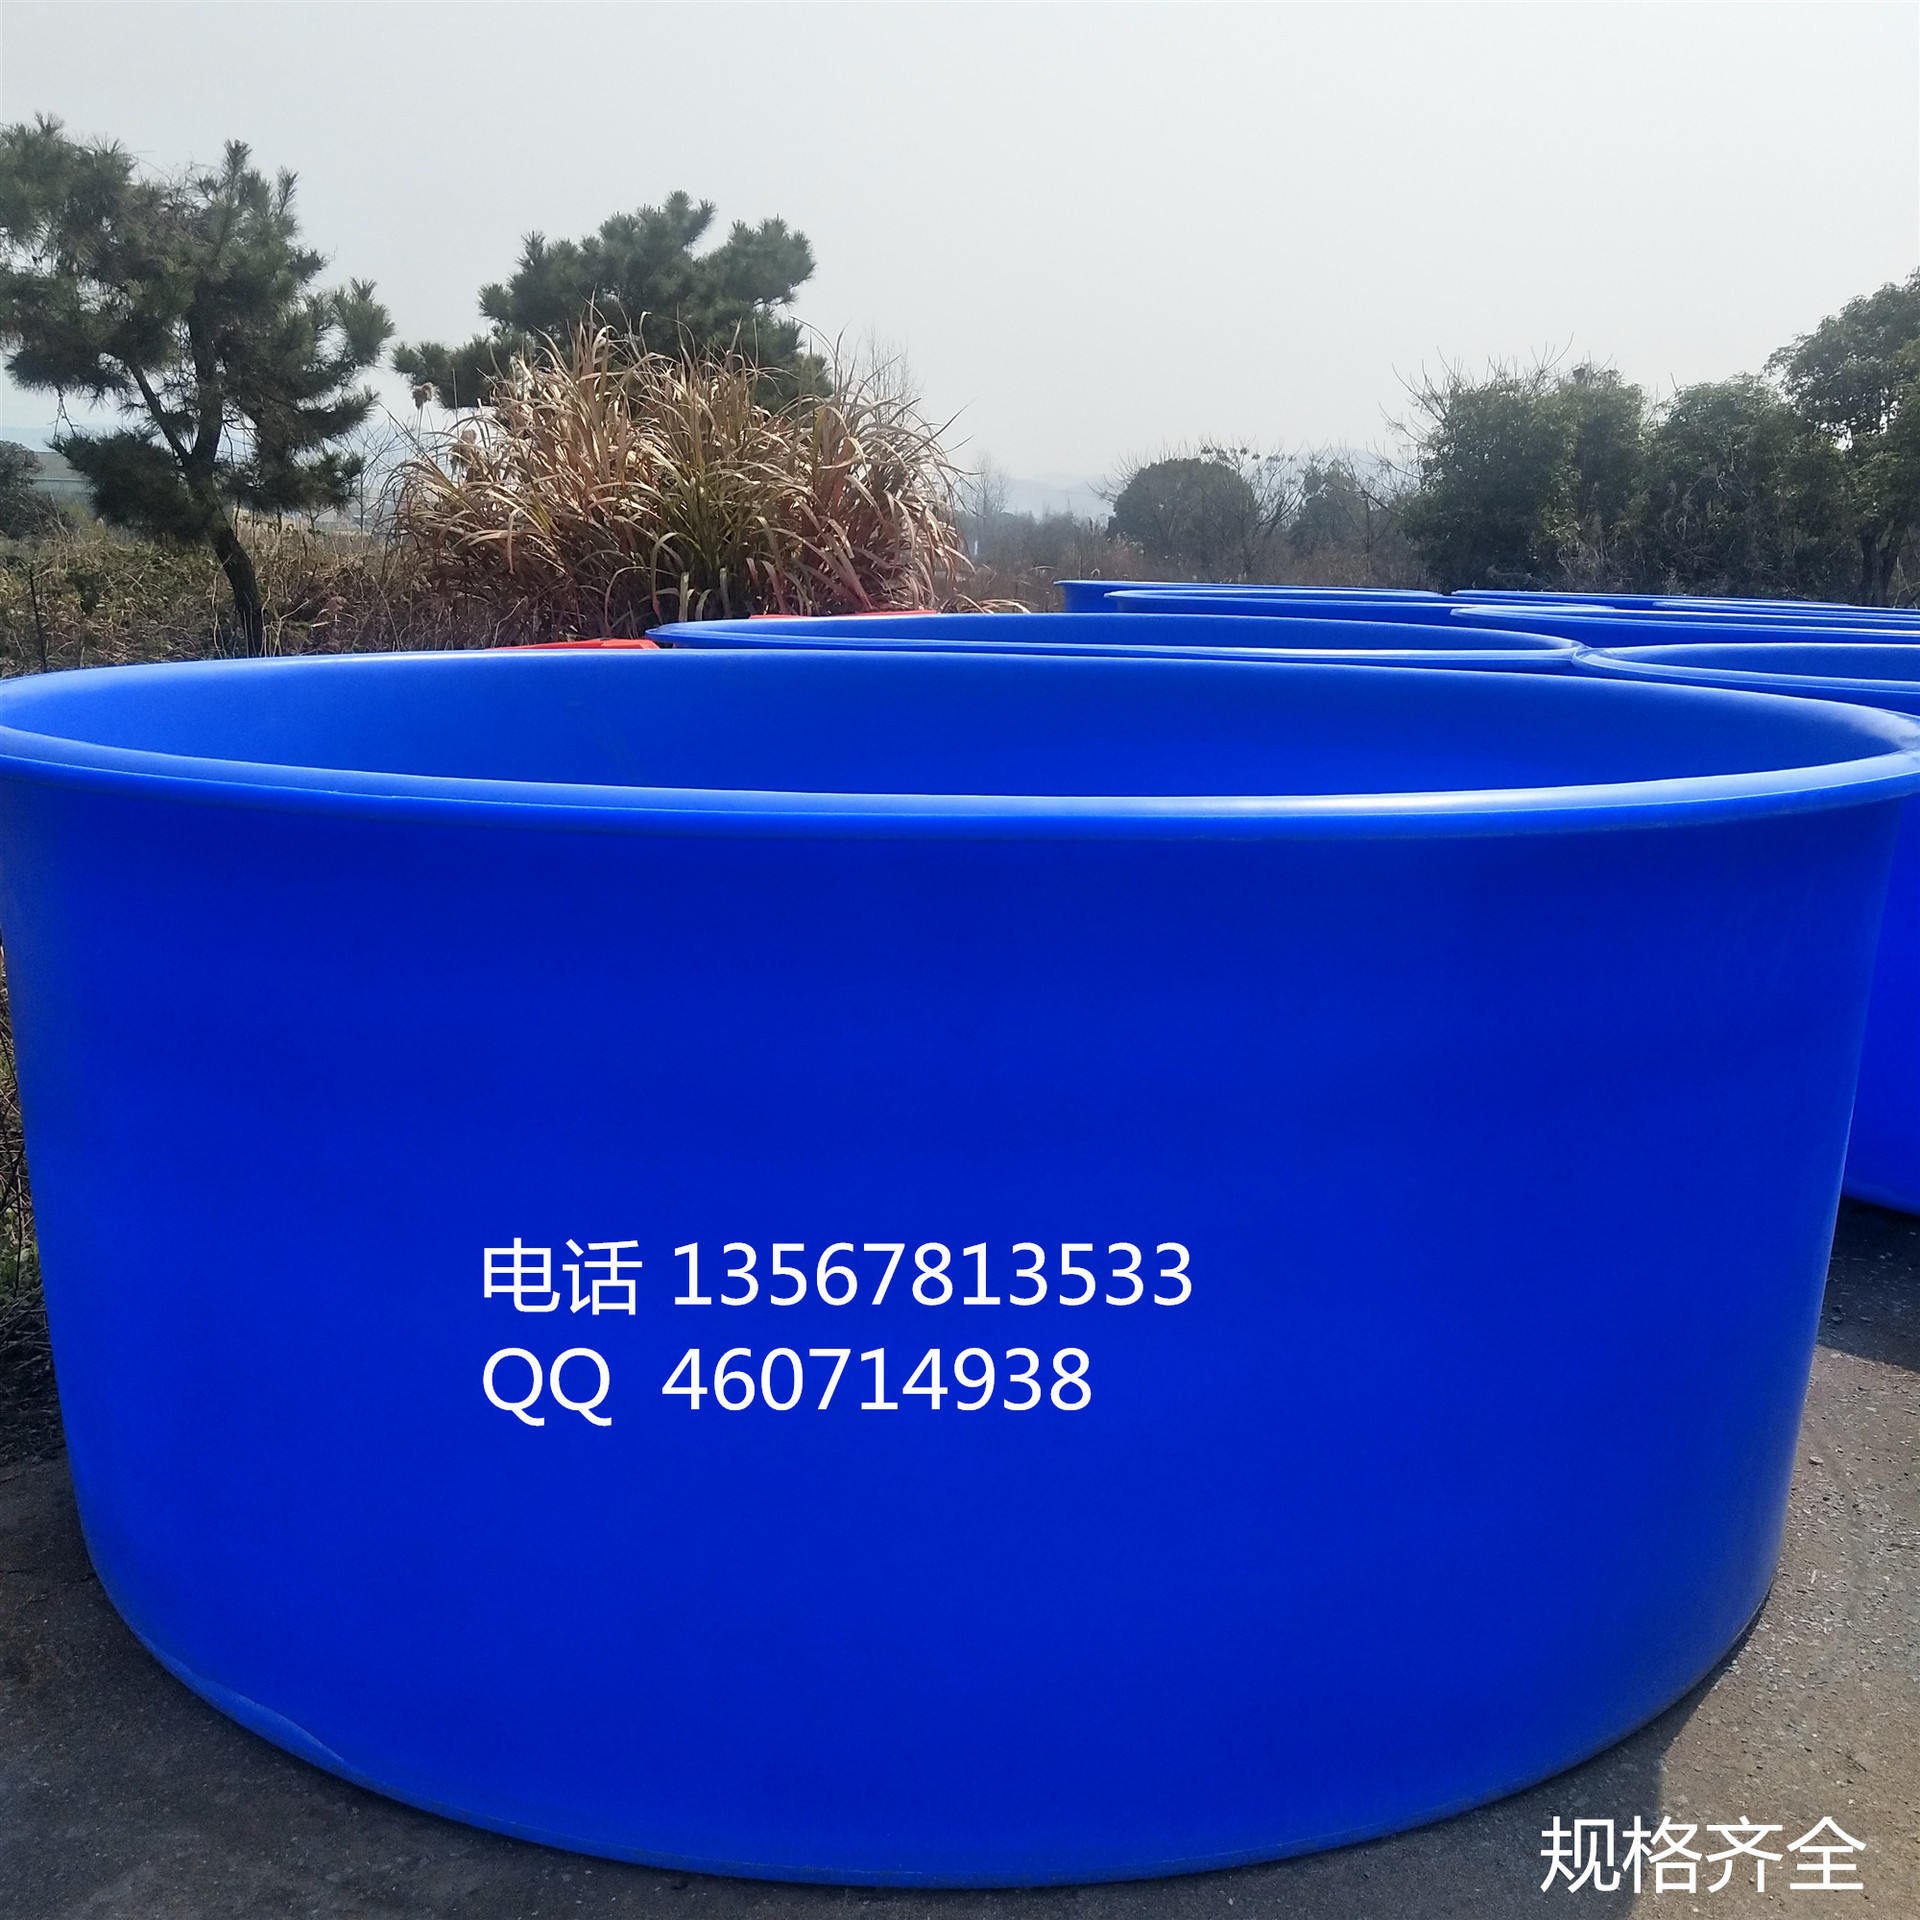 厂家供应大型水产养殖桶 鱼苗养殖桶 水产专用圆桶 海鲜桶示例图1